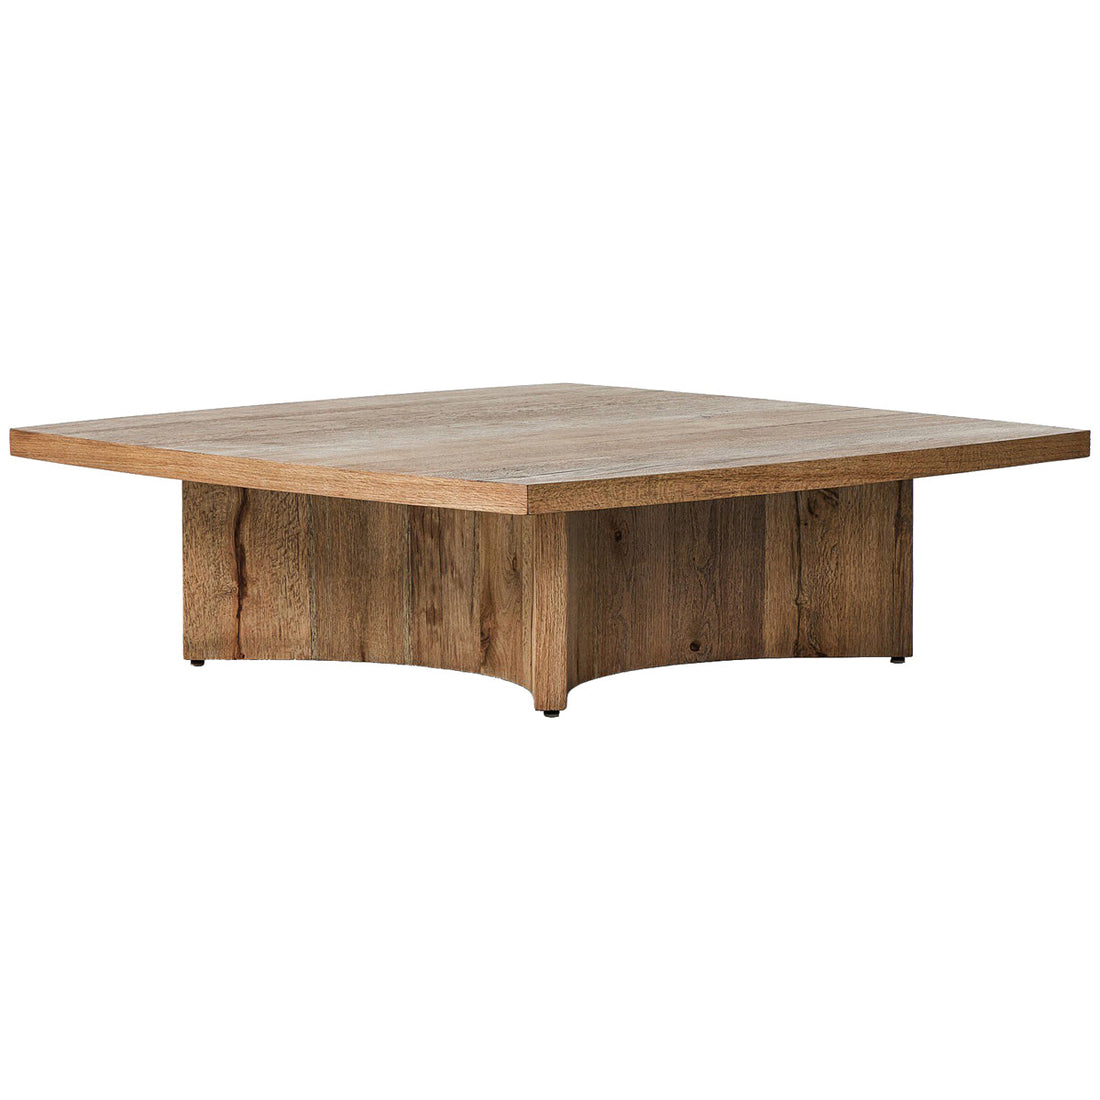 Four Hands Square Coffee Table - Rustic Oak Veneer